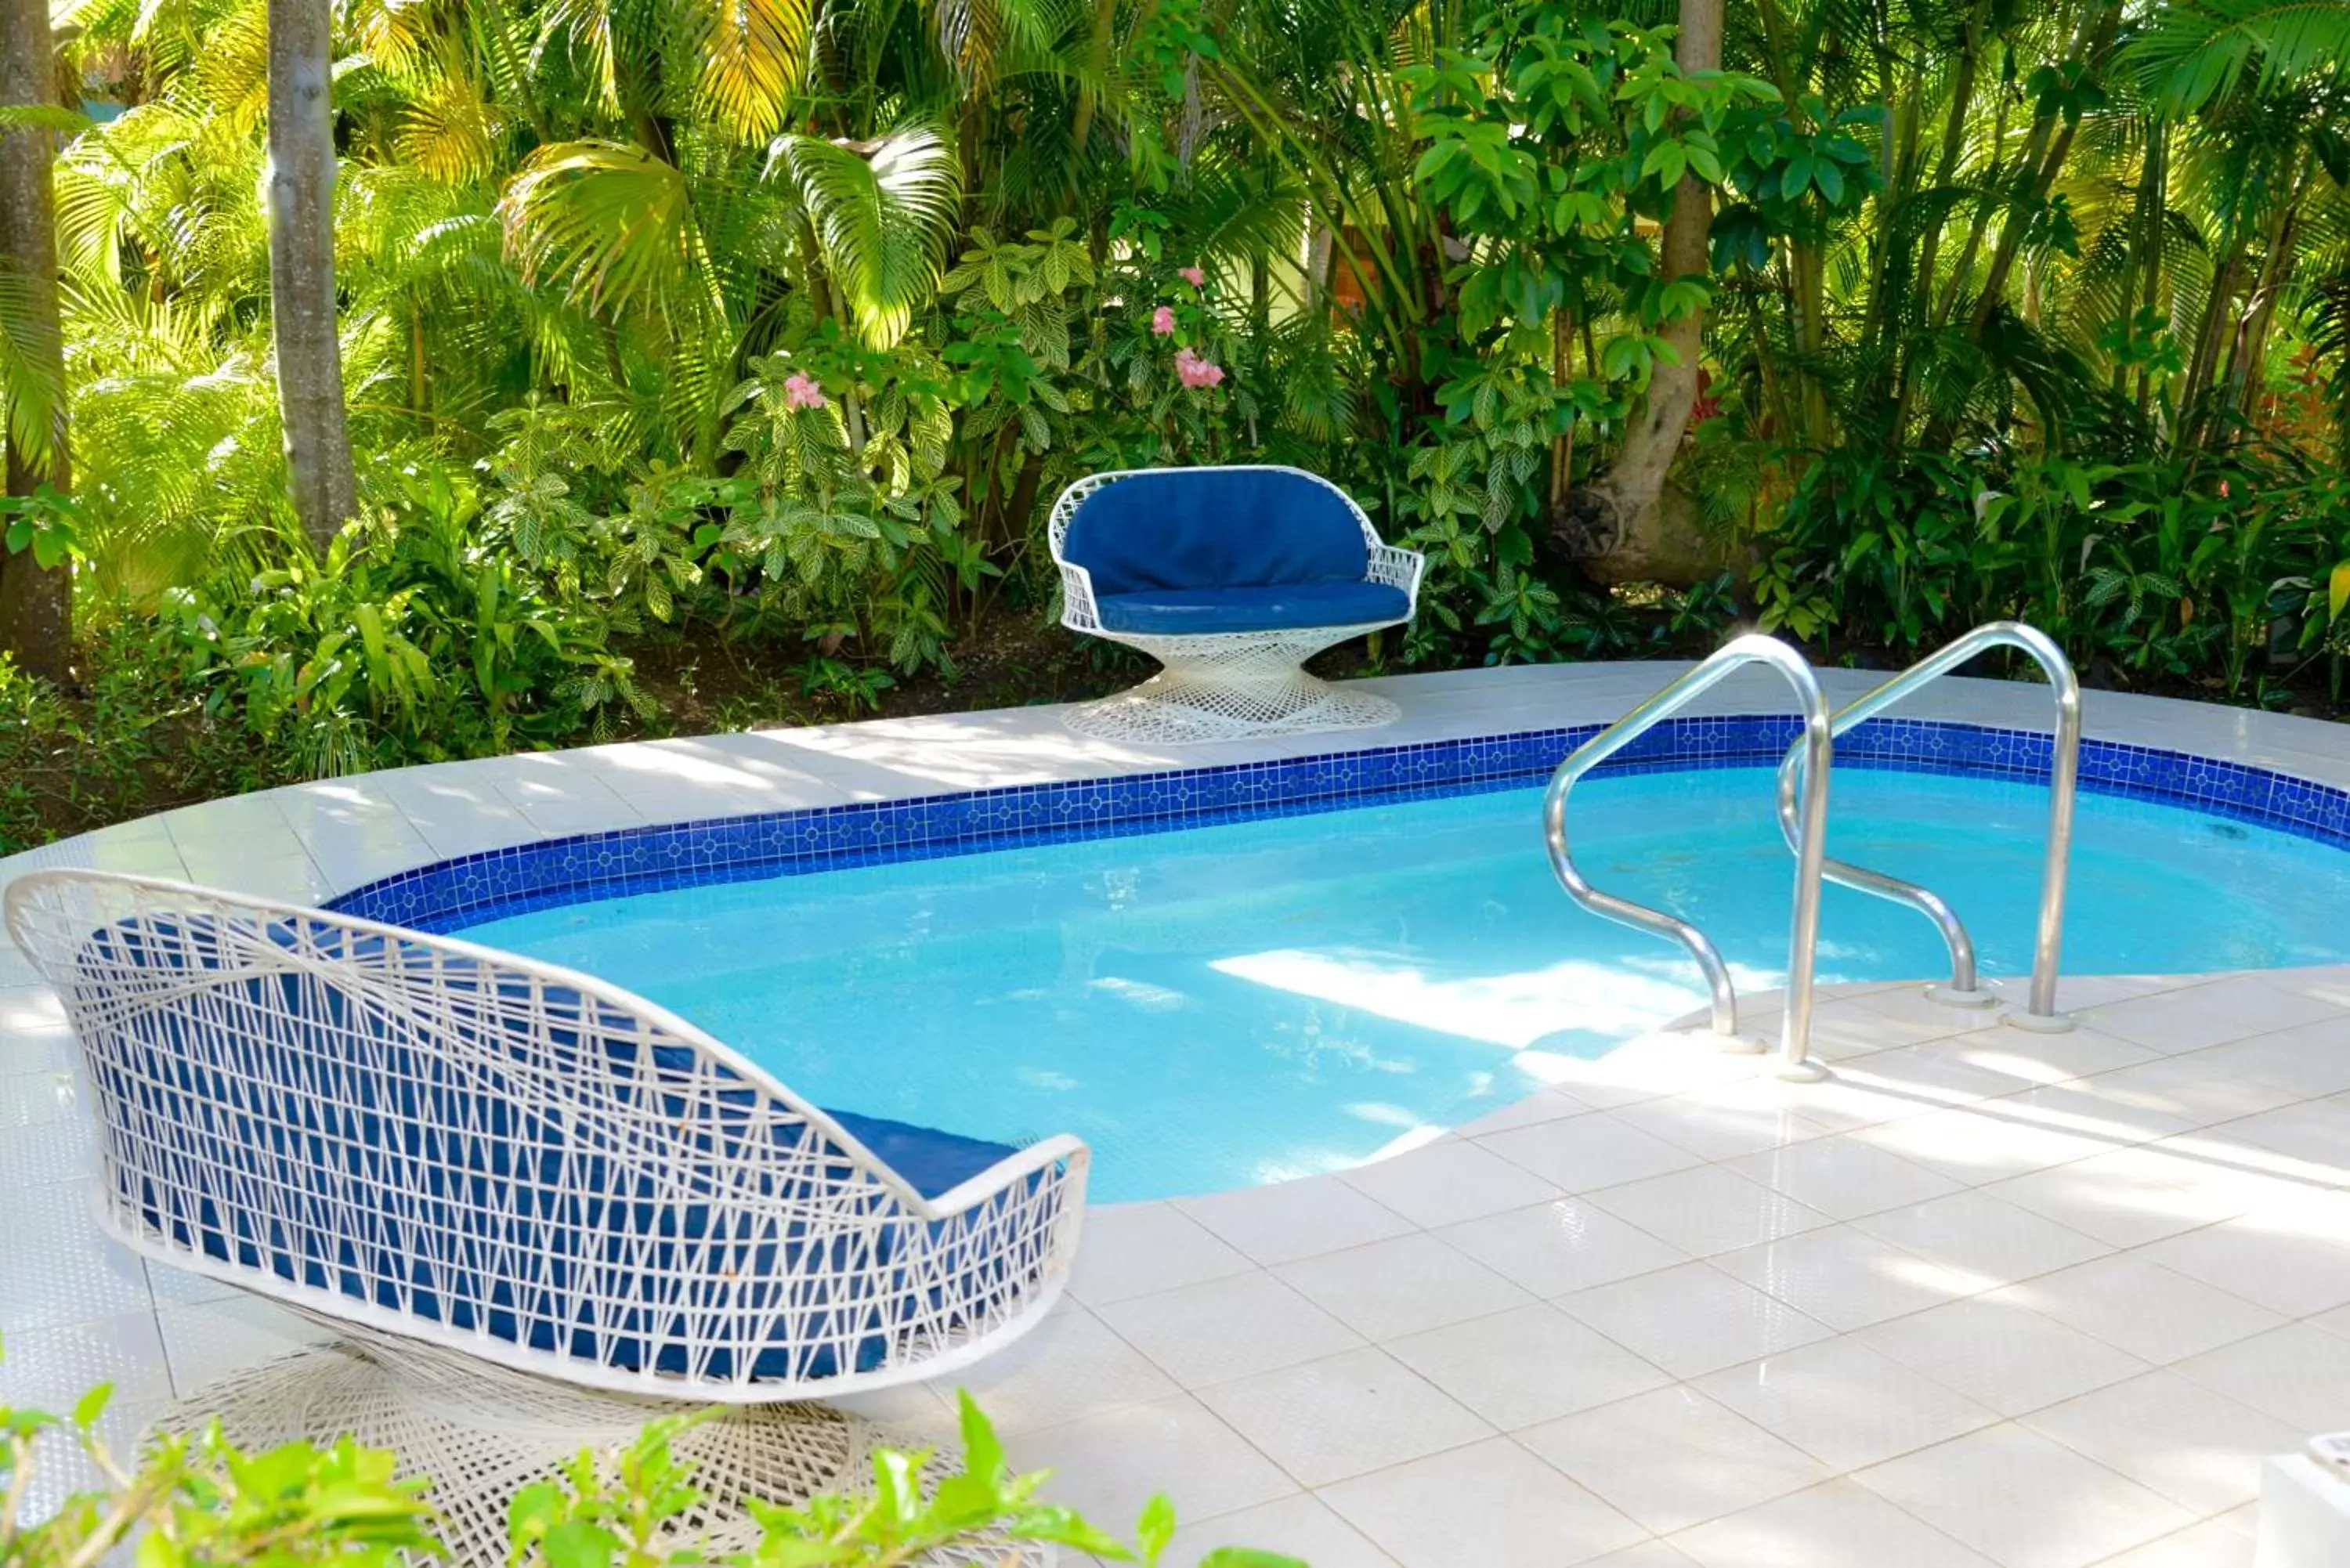 Hot Tub, Swimming Pool in Coco La Palm